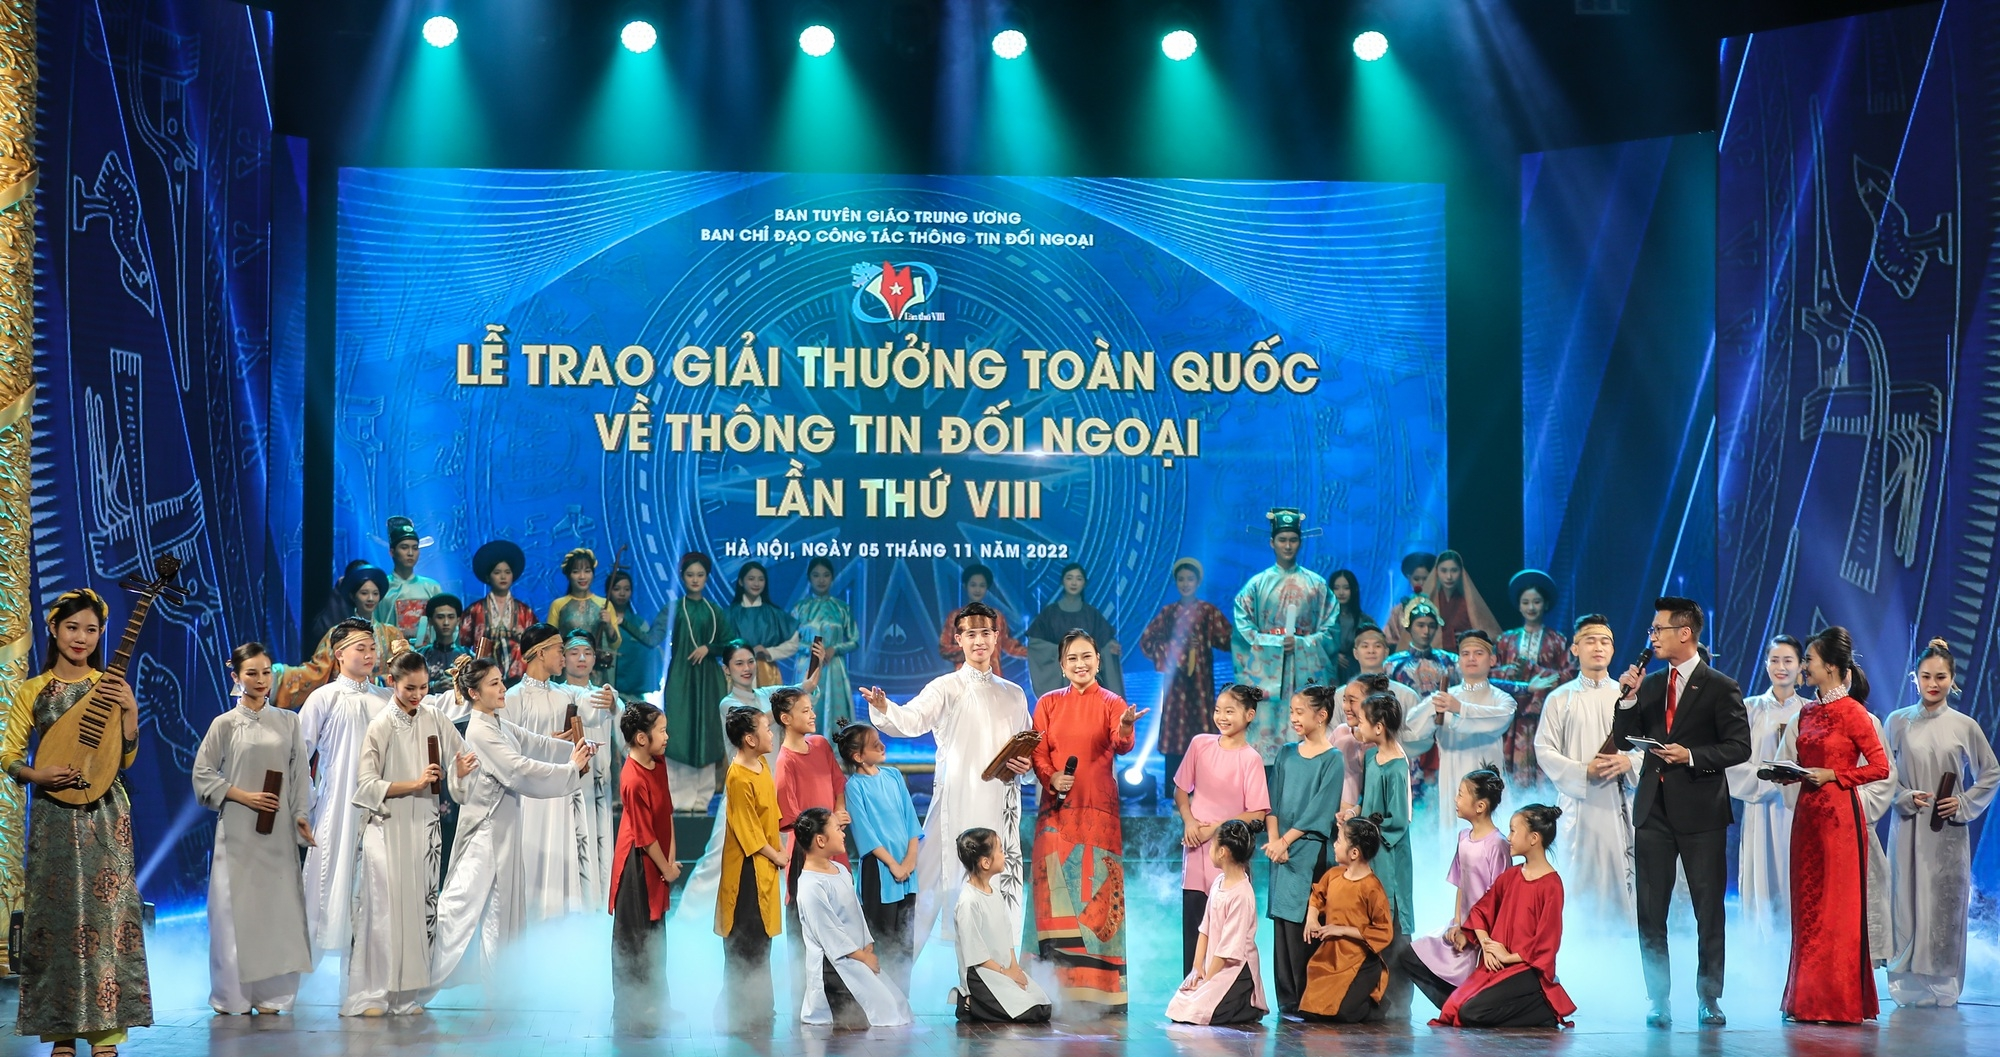 越南友好组织联合会为第八次对外新闻奖的成功做出了积极贡献